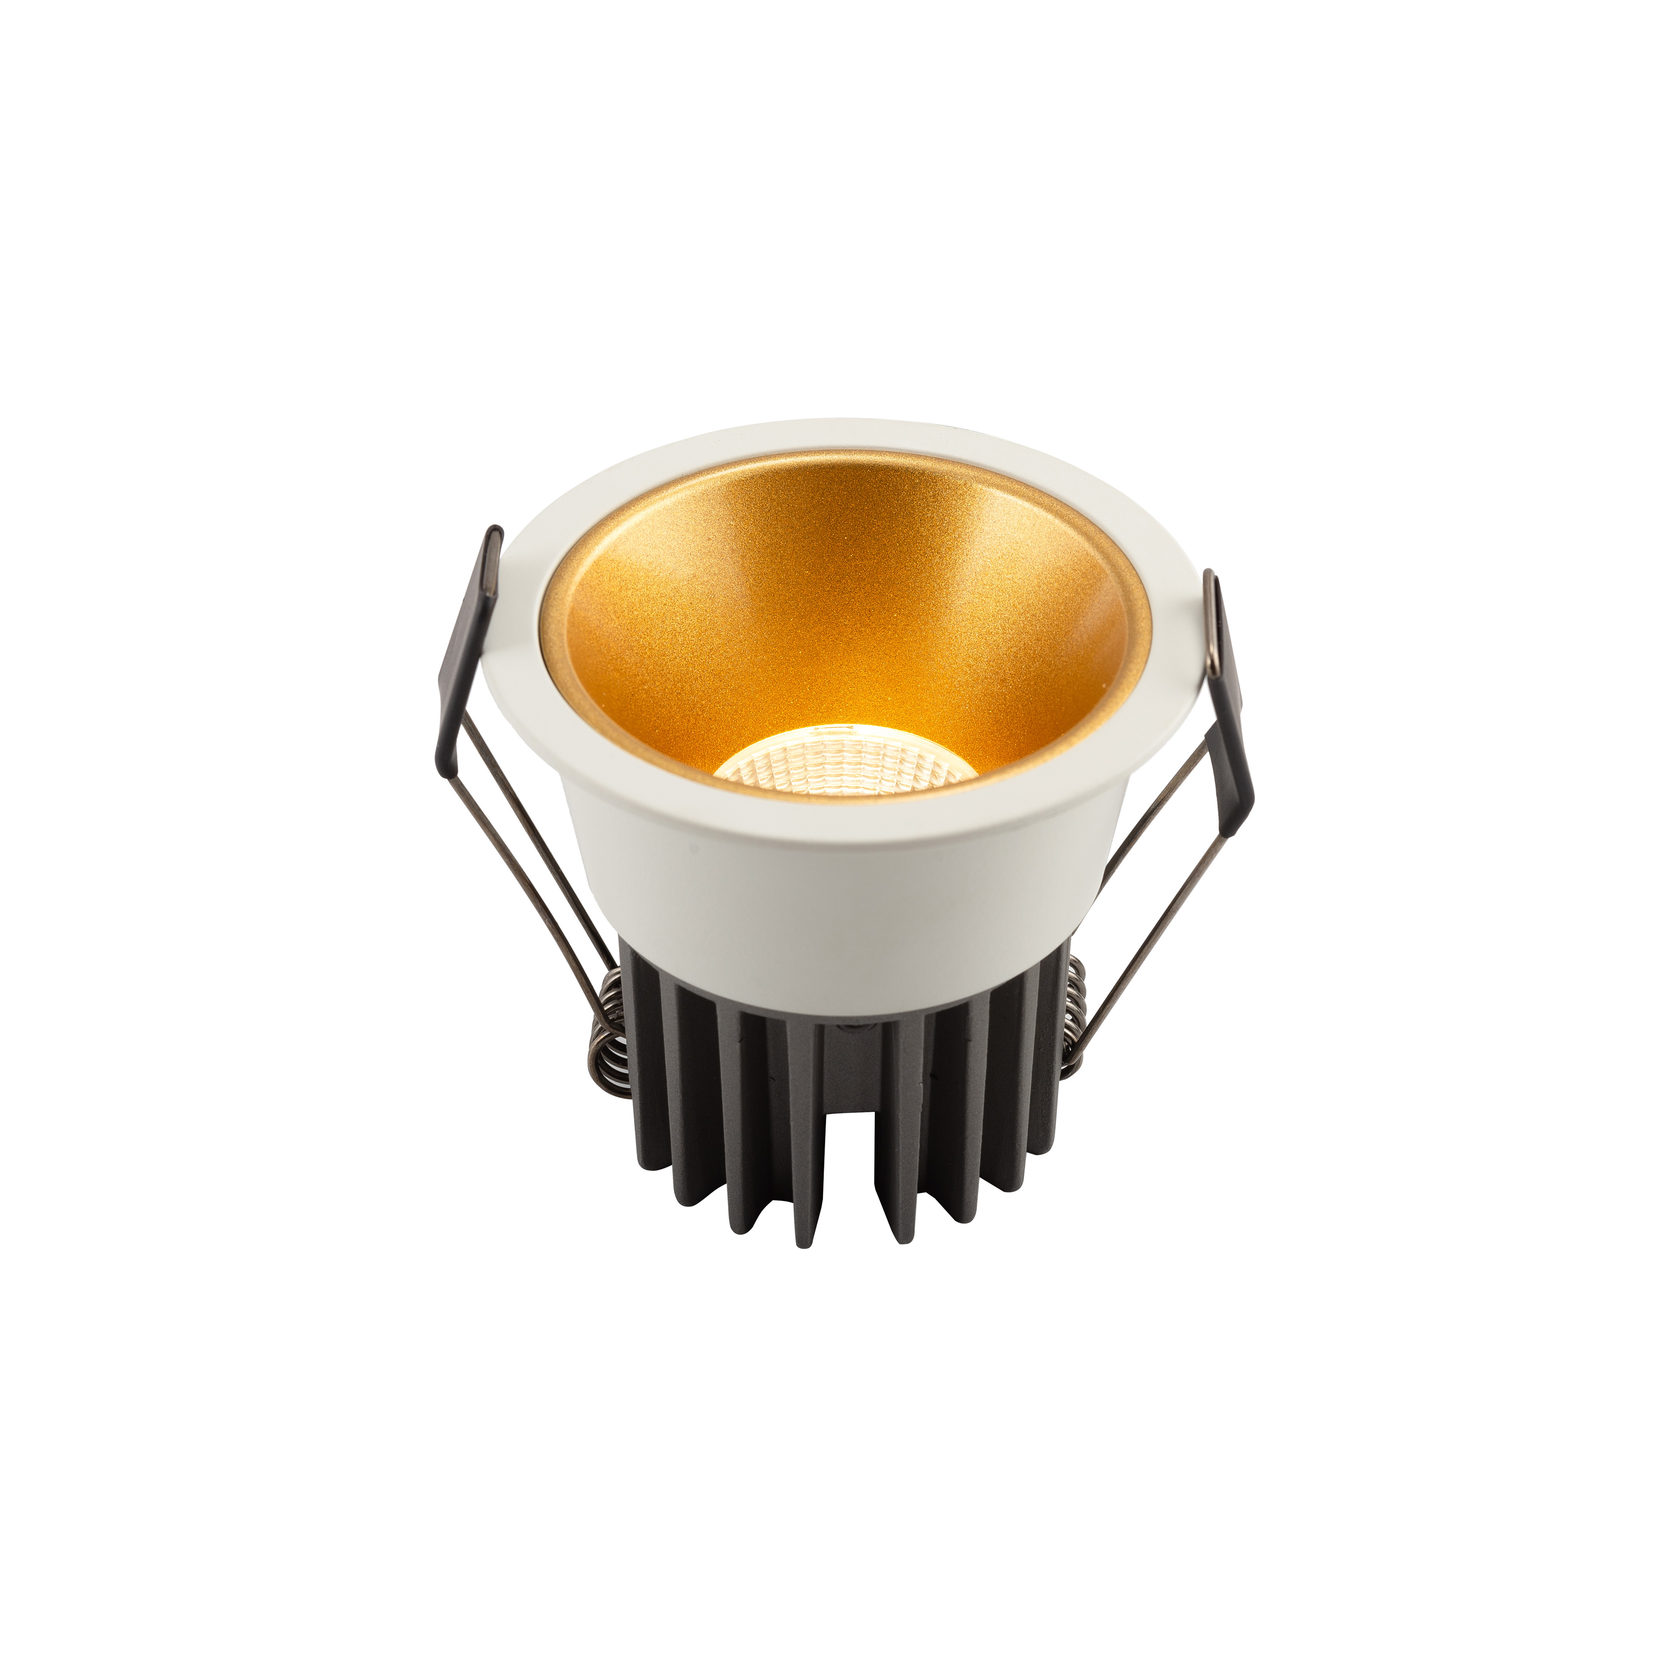 DK4500-WG Встраиваемый светильник, IP 20, 12 Вт, LED 3000, бело-золотой, алюминий DK4500-WG